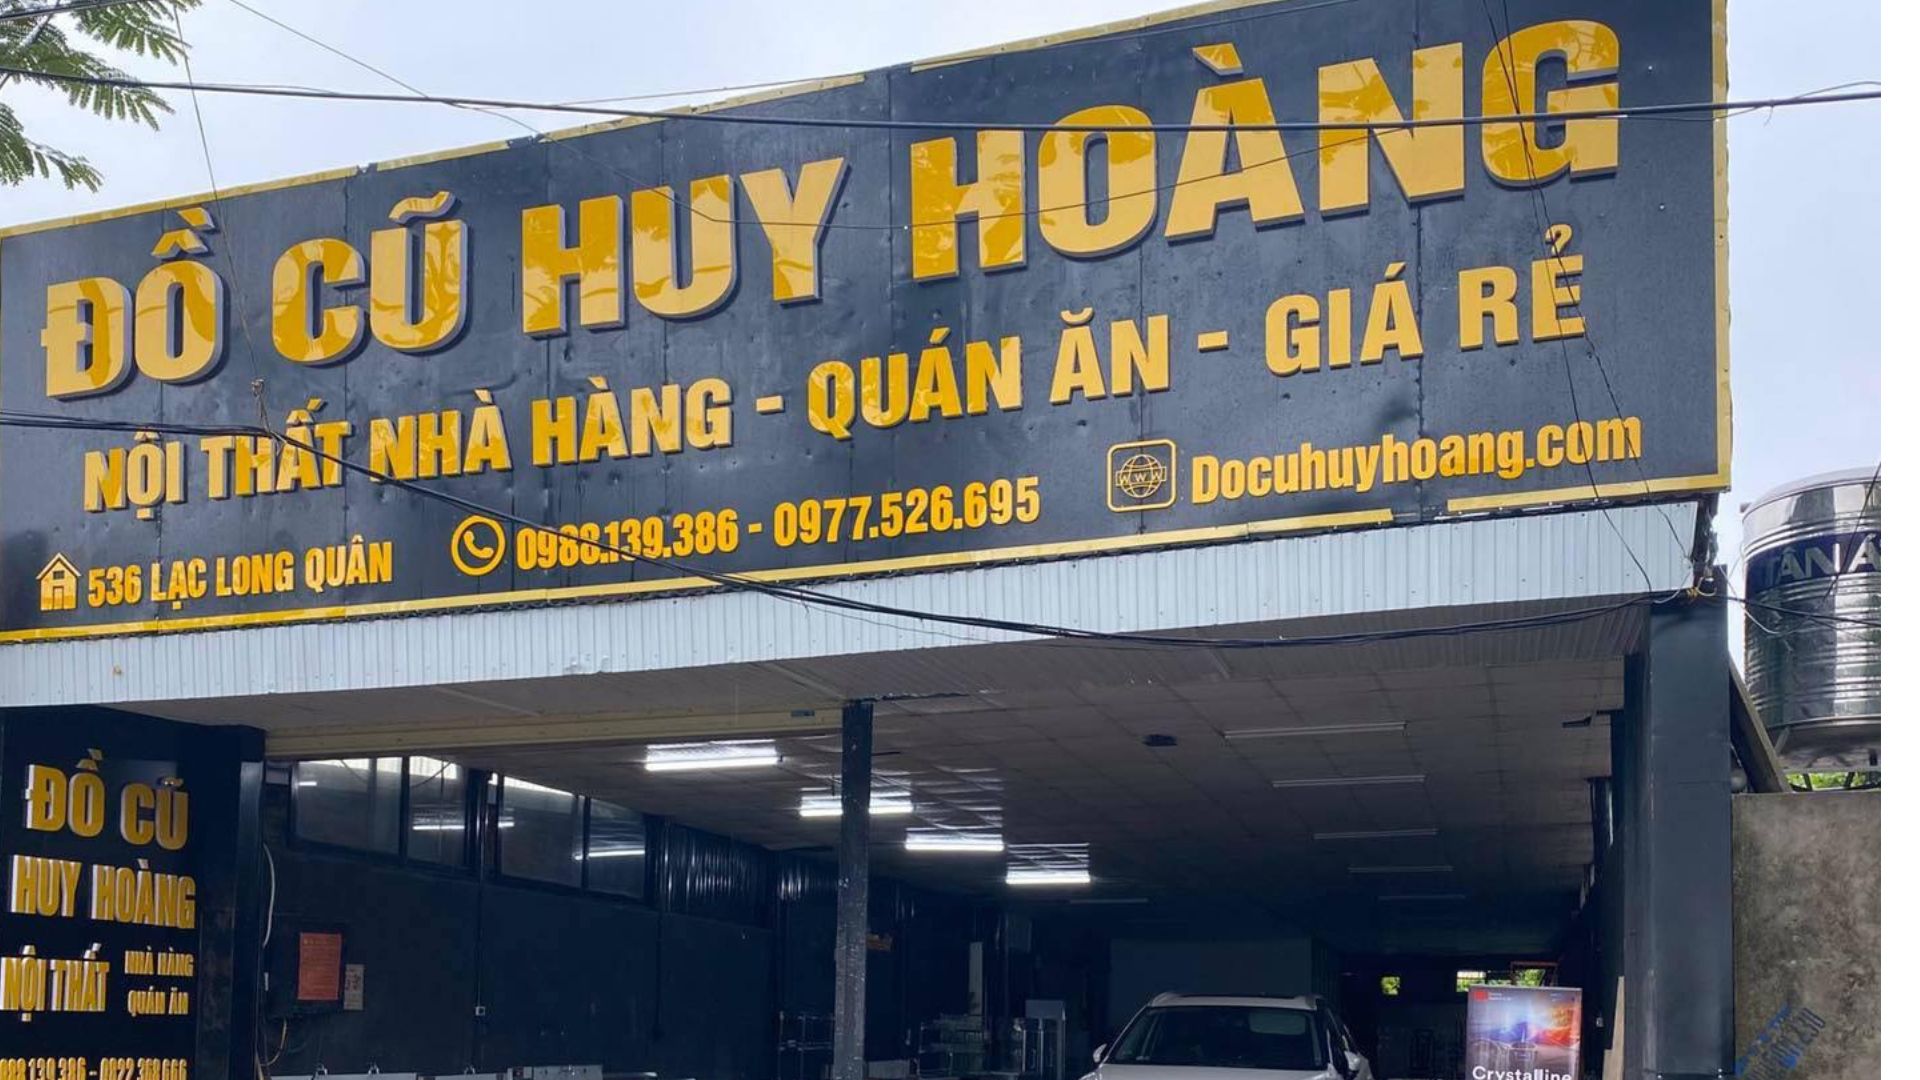 Đồ cũ Huy Hoàng - Thu mua chợ đồ cũ Hà Nội chuyên nghiệp 